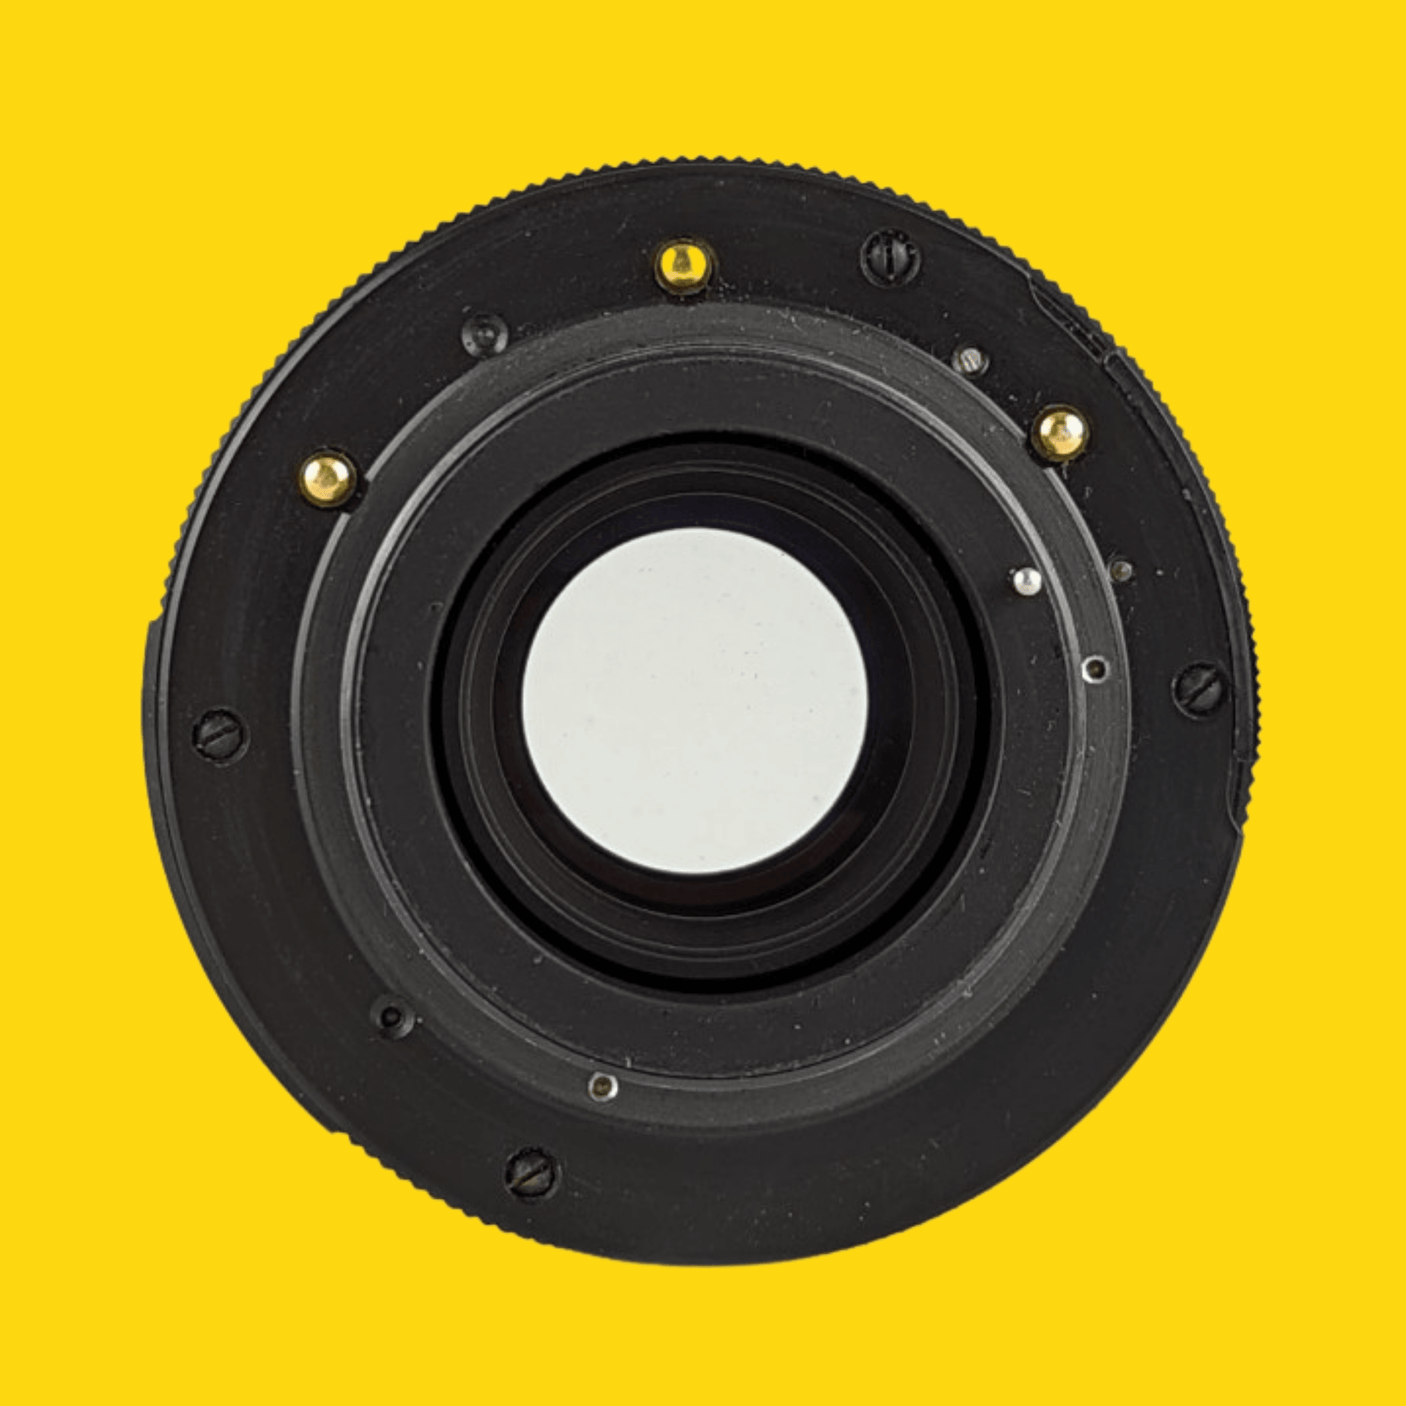 Pentacon 135mm f/2.8 Camera Lens